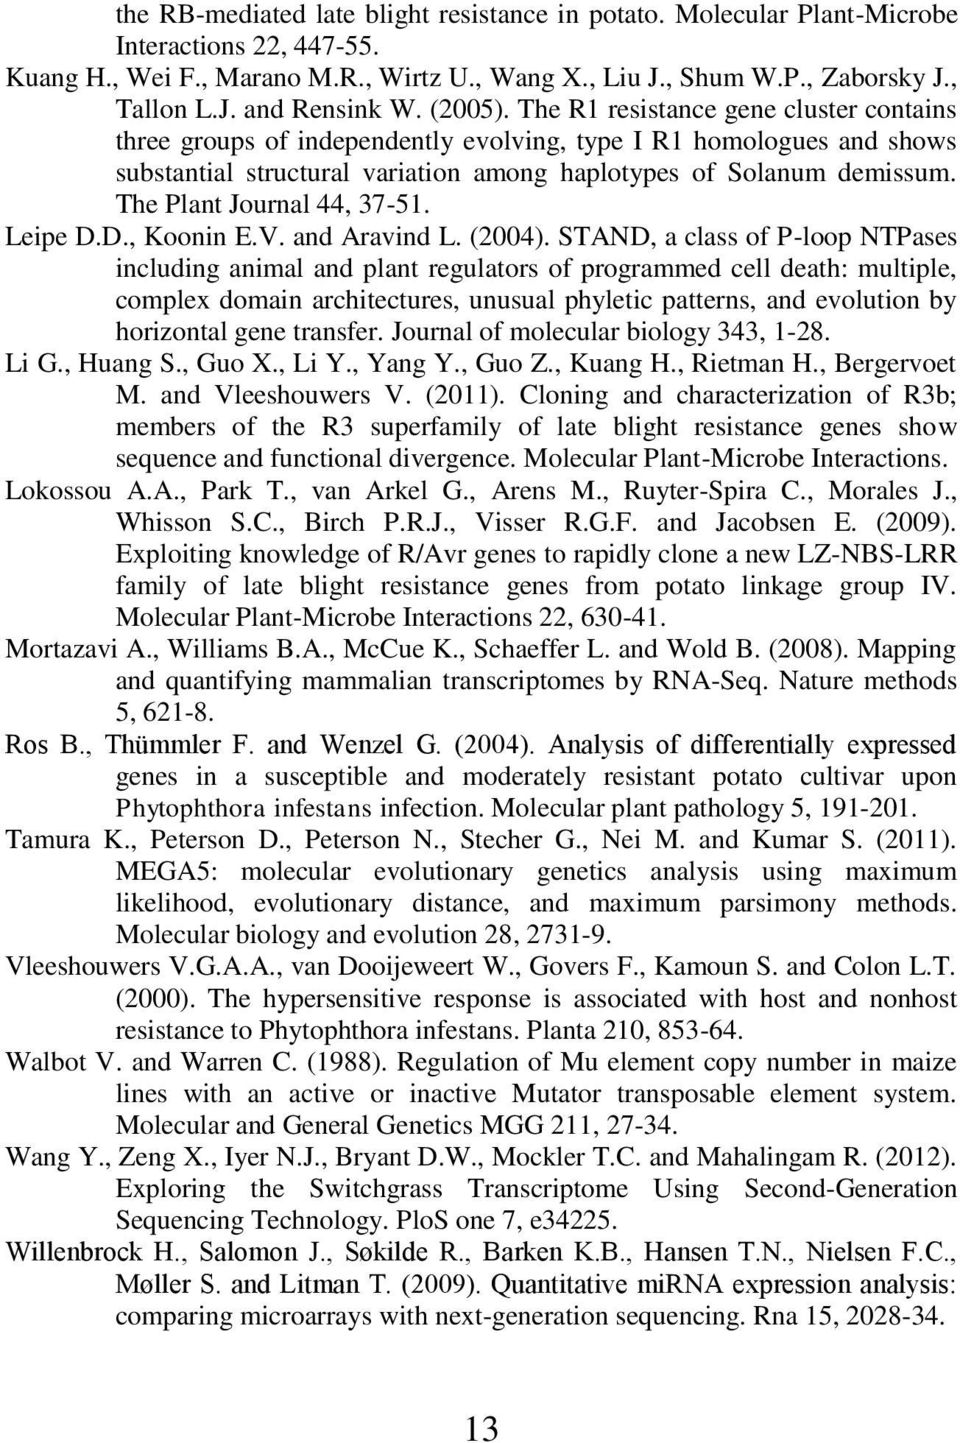 The Plant Journal 44, 37-51. Leipe D.D., Koonin E.V. and Aravind L. (2004).